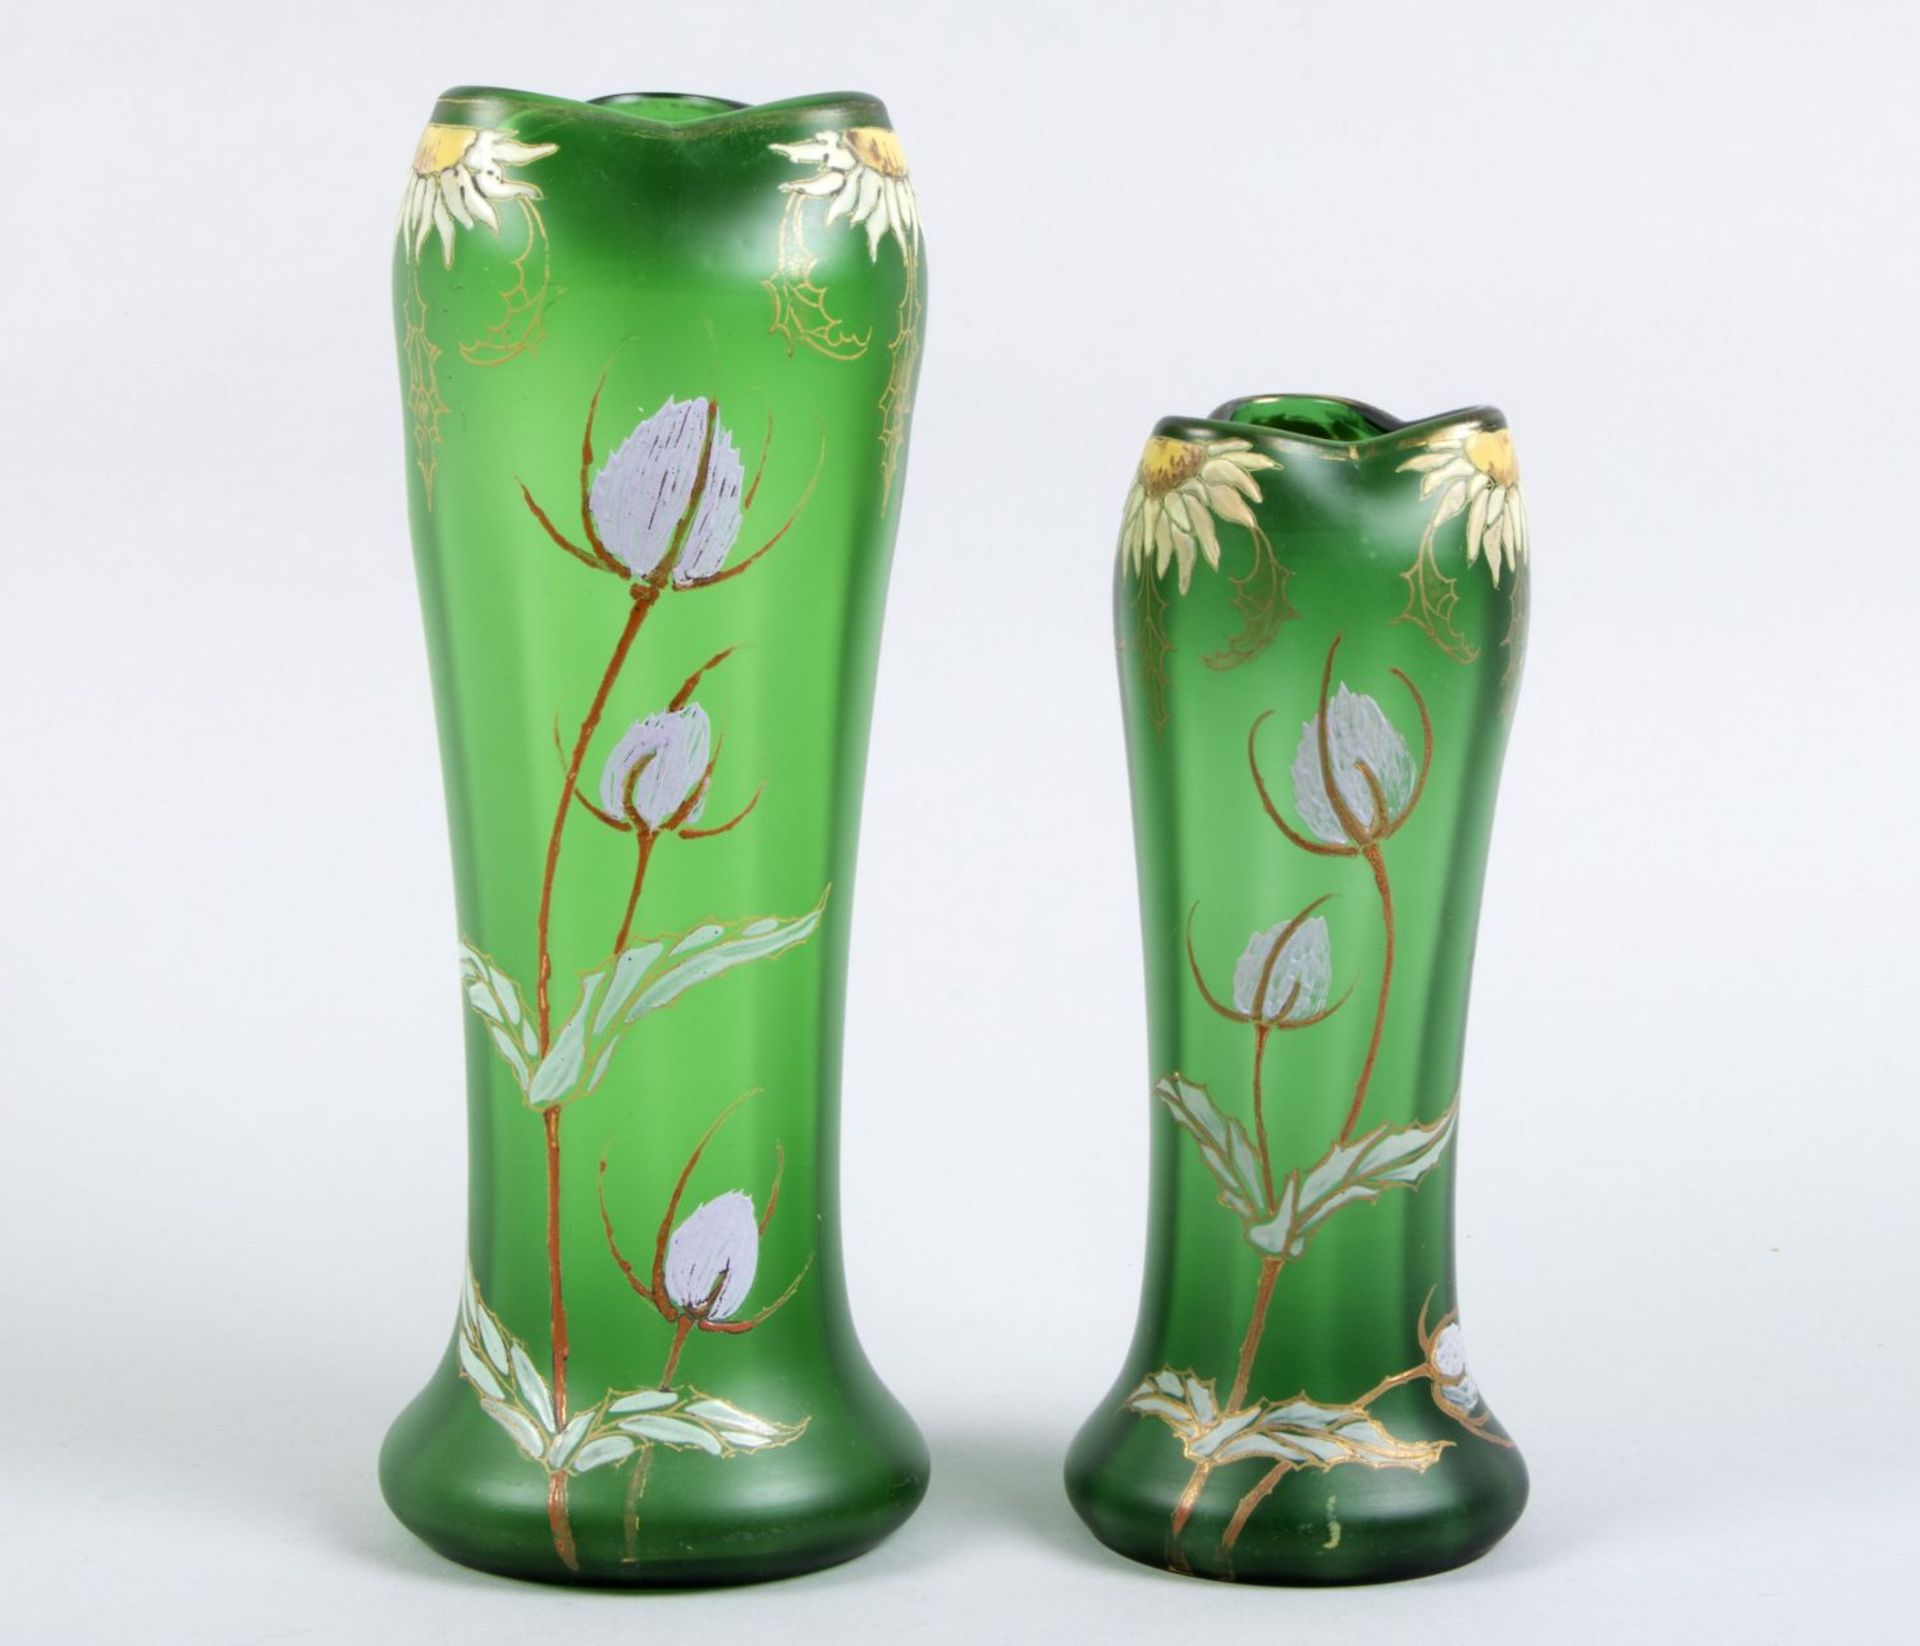 Zwei Vasen Farbloses Glas, grün unterfangen. Polychrome Bemalung mit Opakemail mit Disteln u